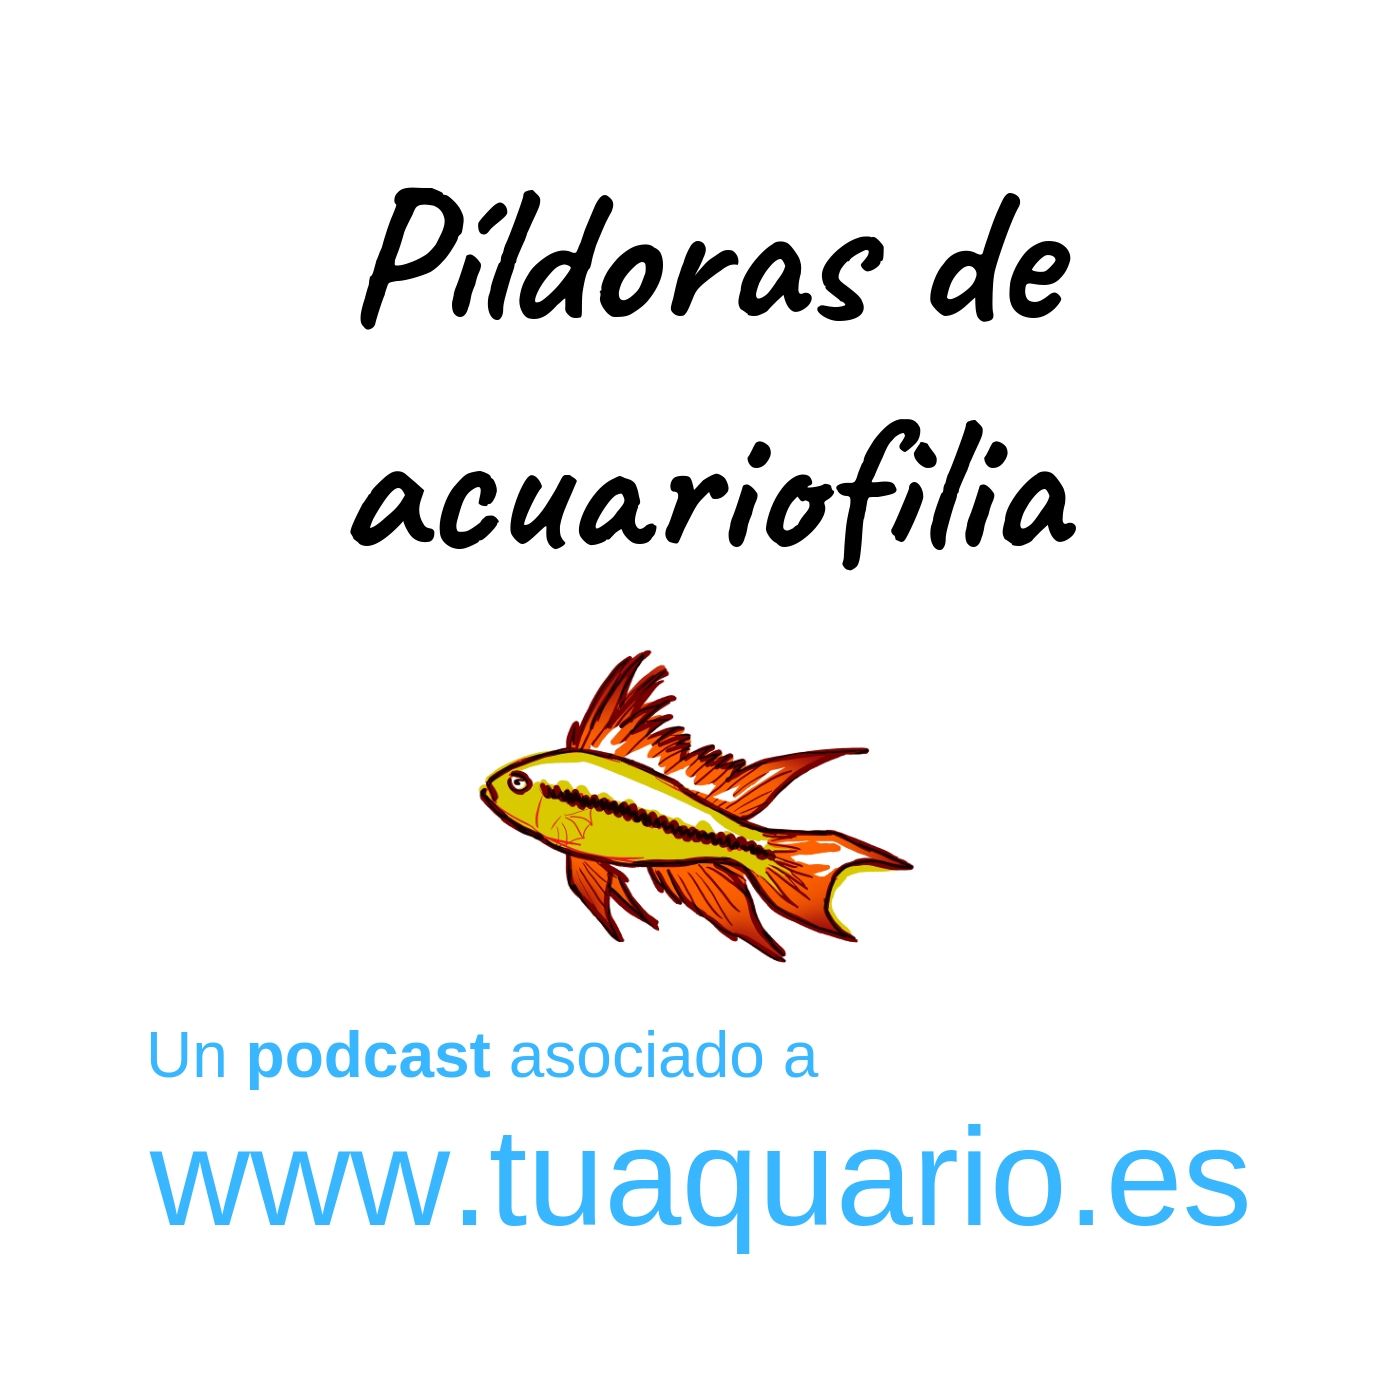 Pildoras de acuariofilia 3. Acuariofilia Responsable España (conversación)